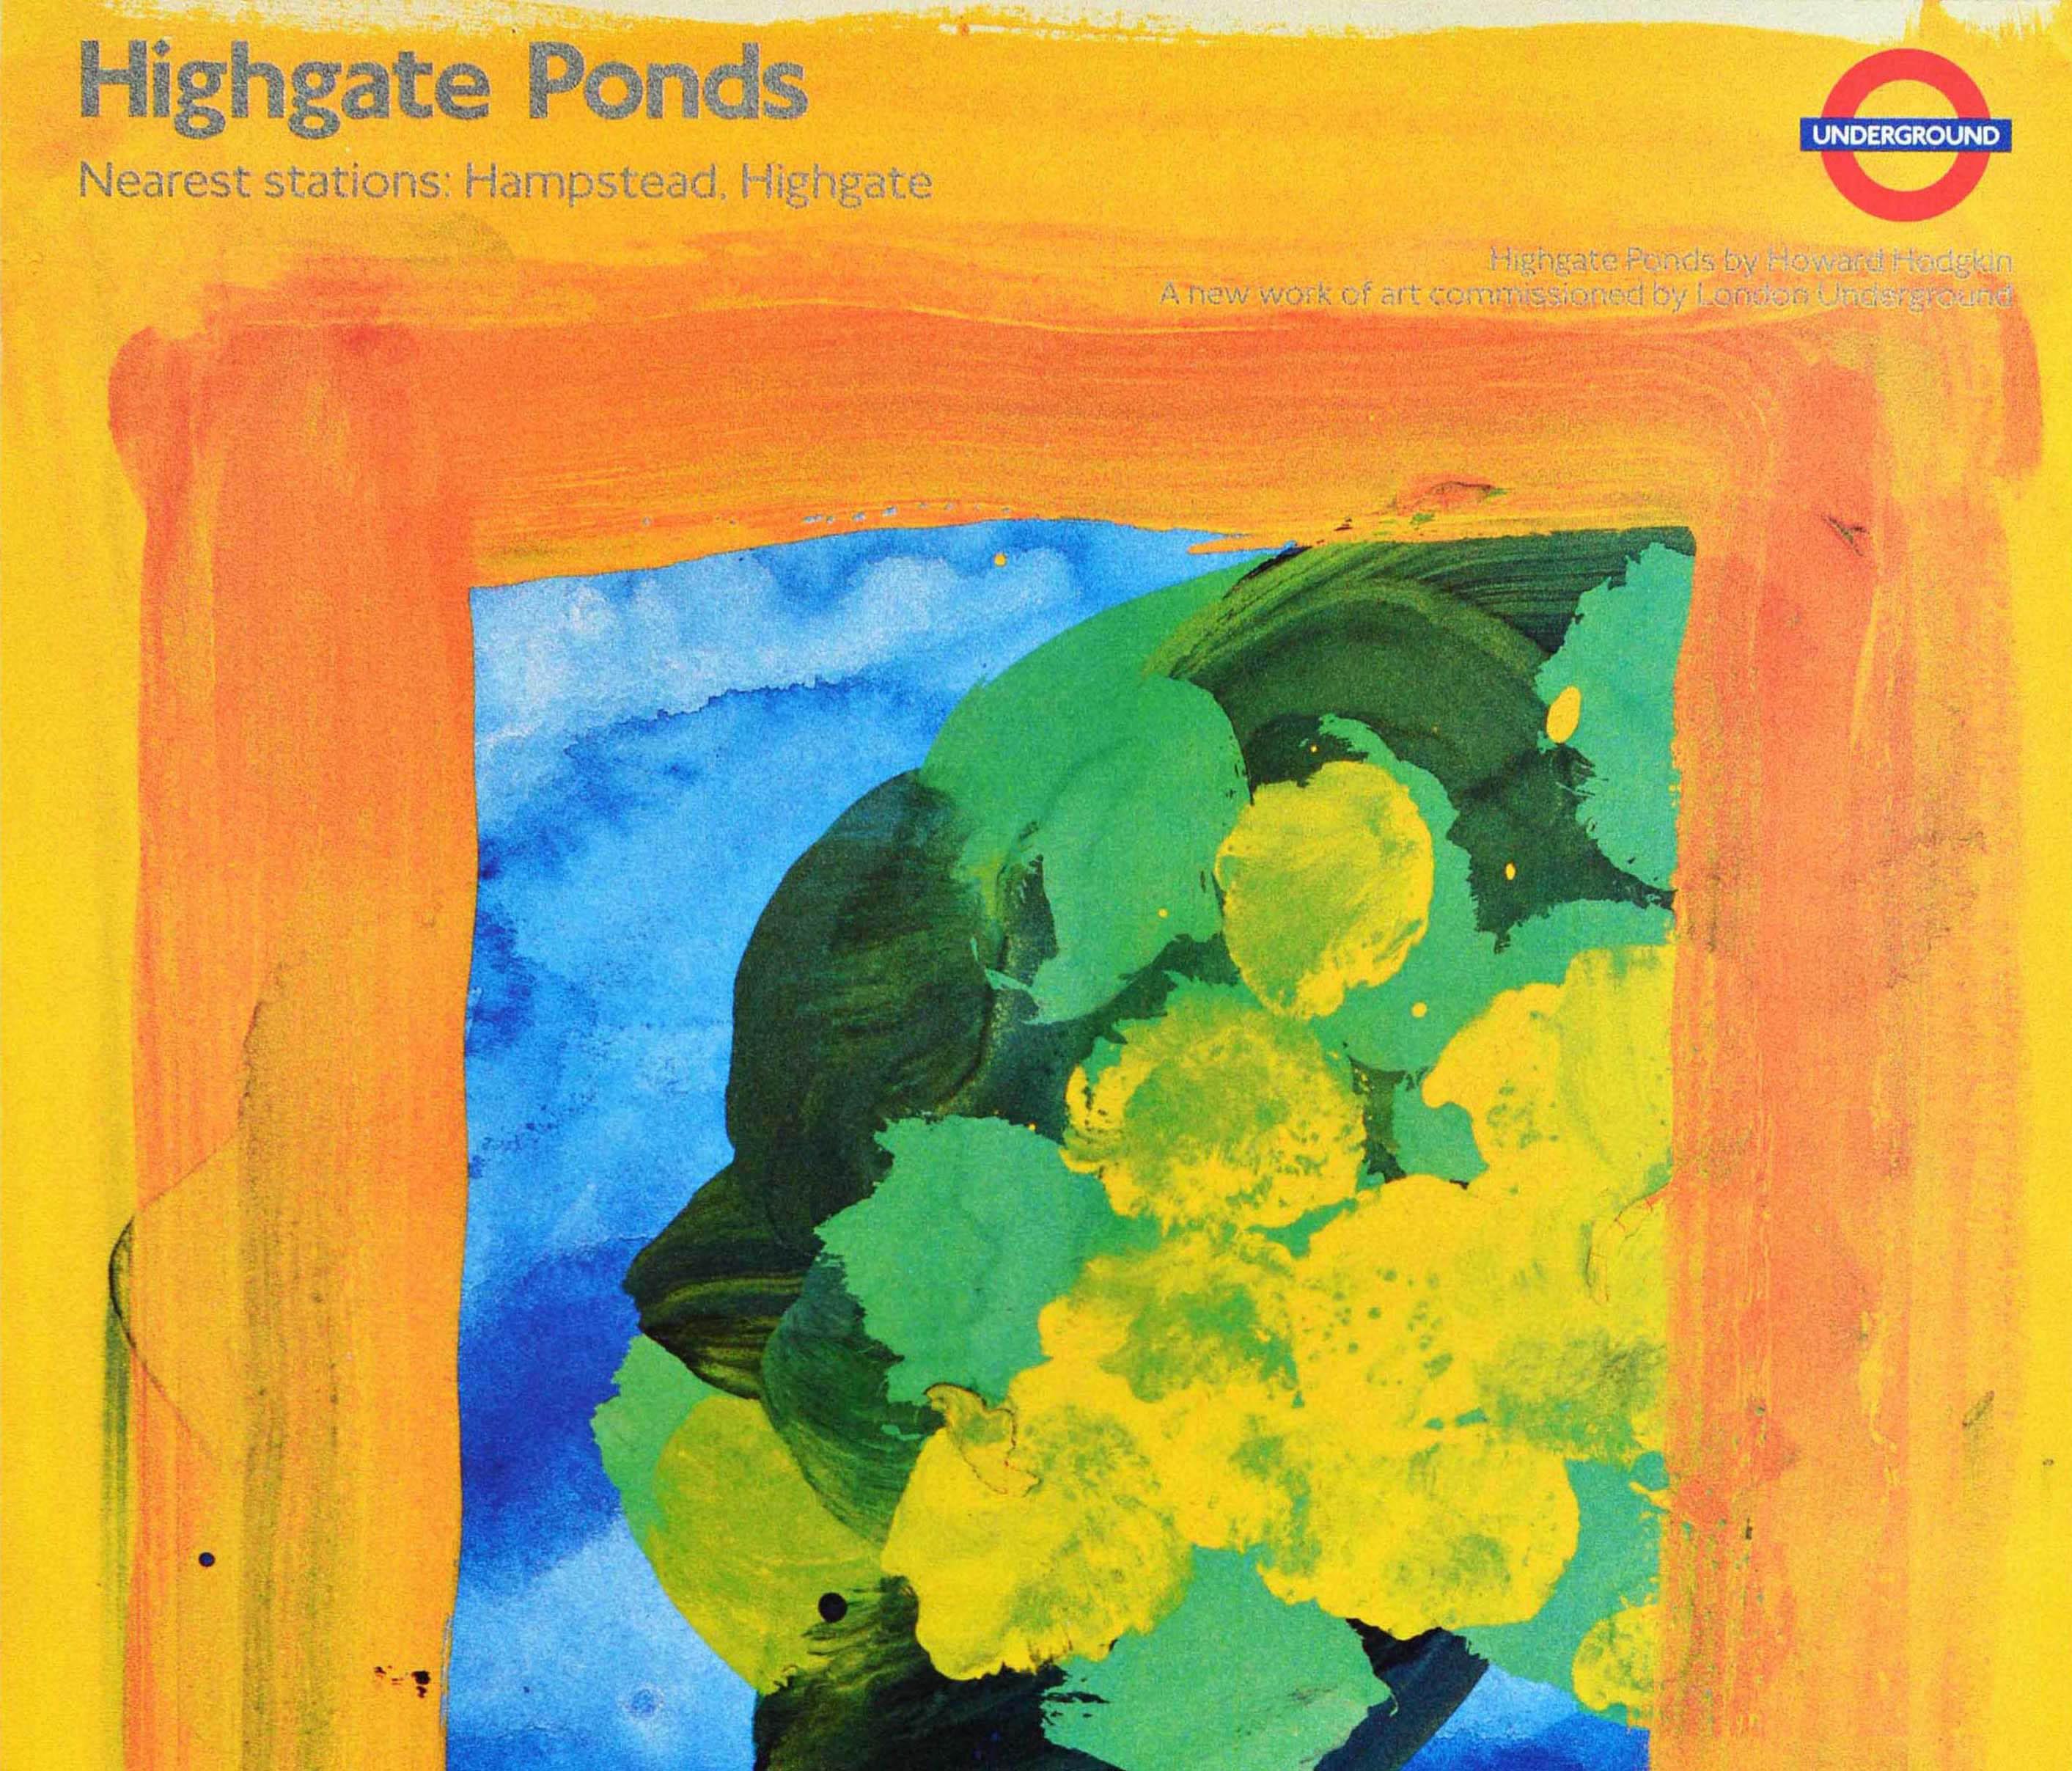 British Original Vintage London Underground Poster Highgate Ponds Howard Hodgkin Art LT For Sale